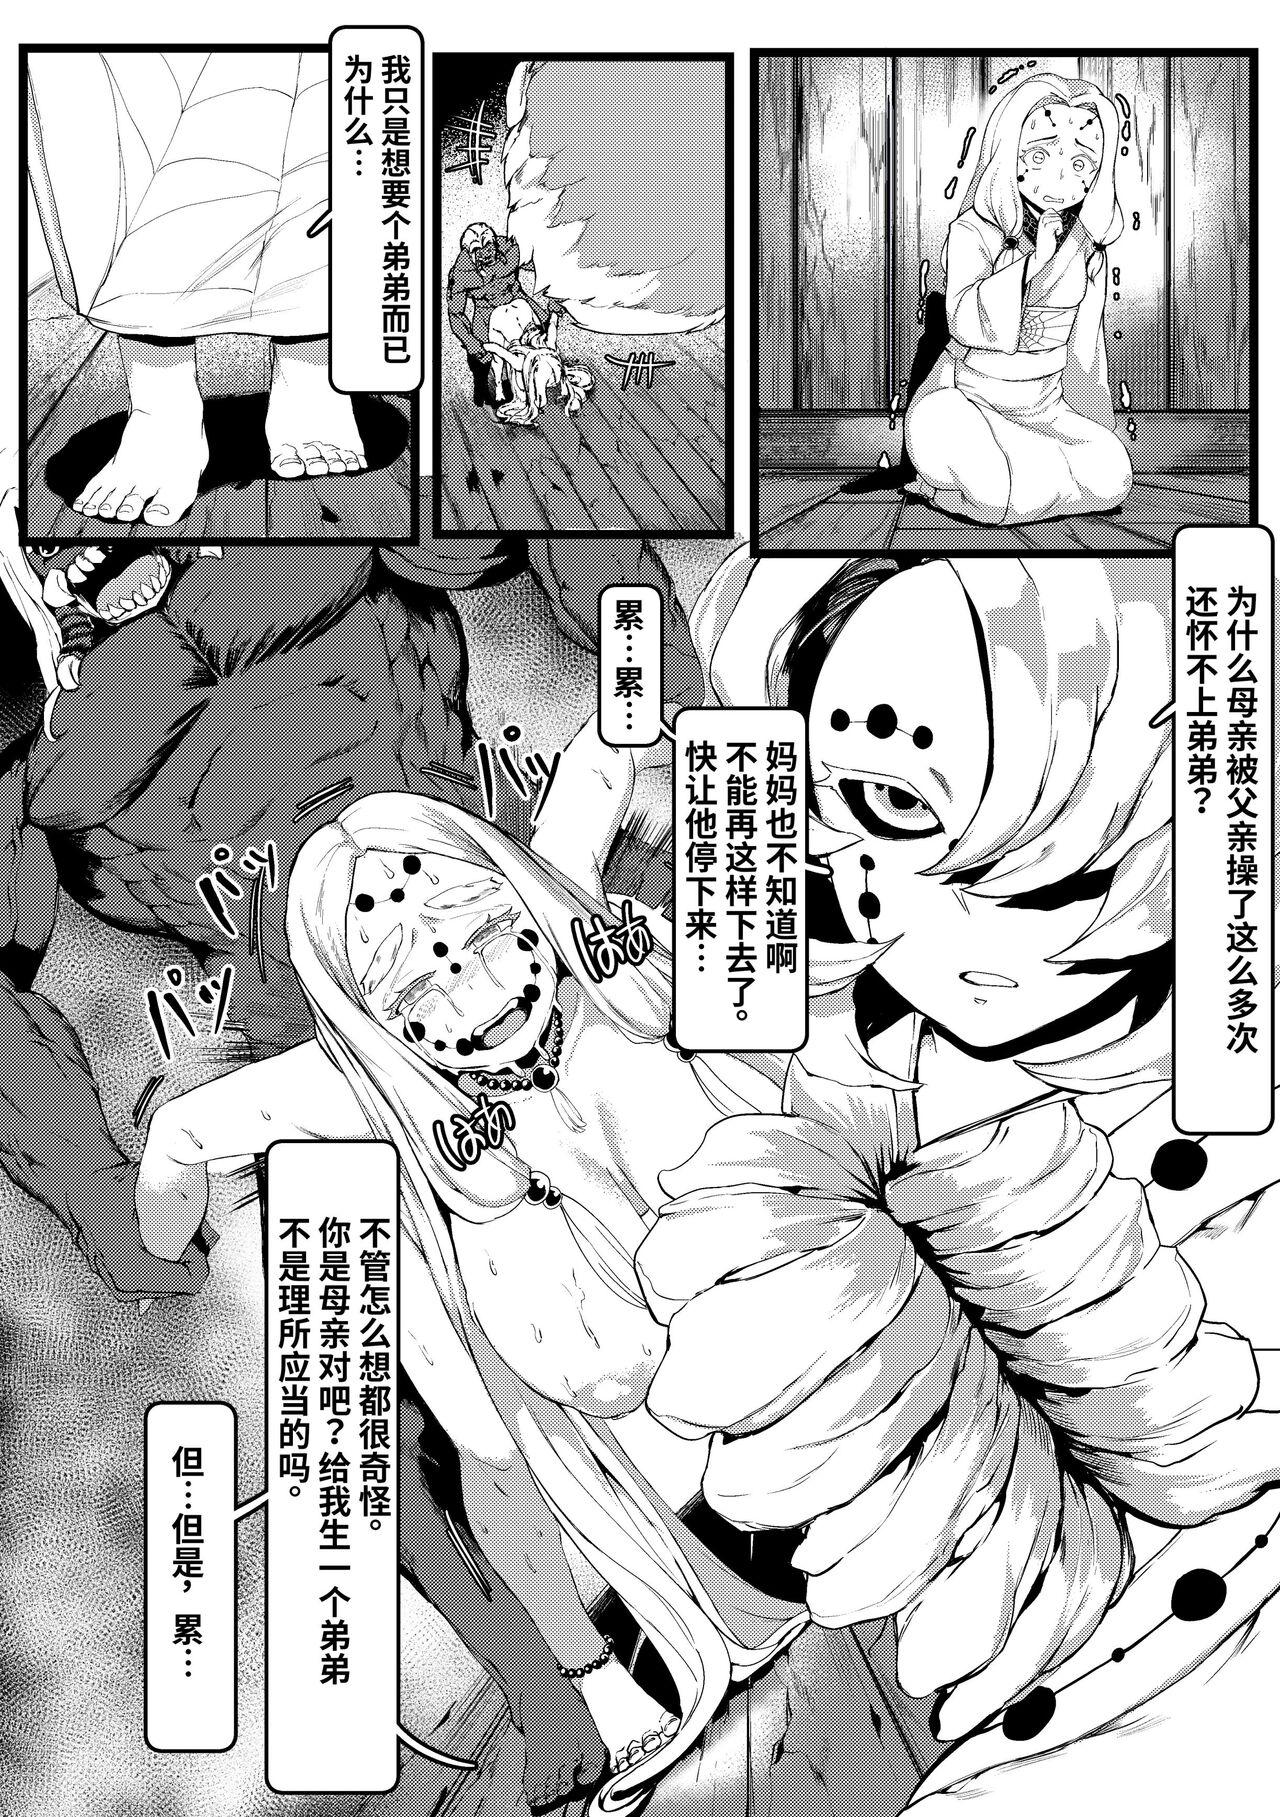 Boy Spider Family - Kimetsu no yaiba | demon slayer Bang Bros - Page 4